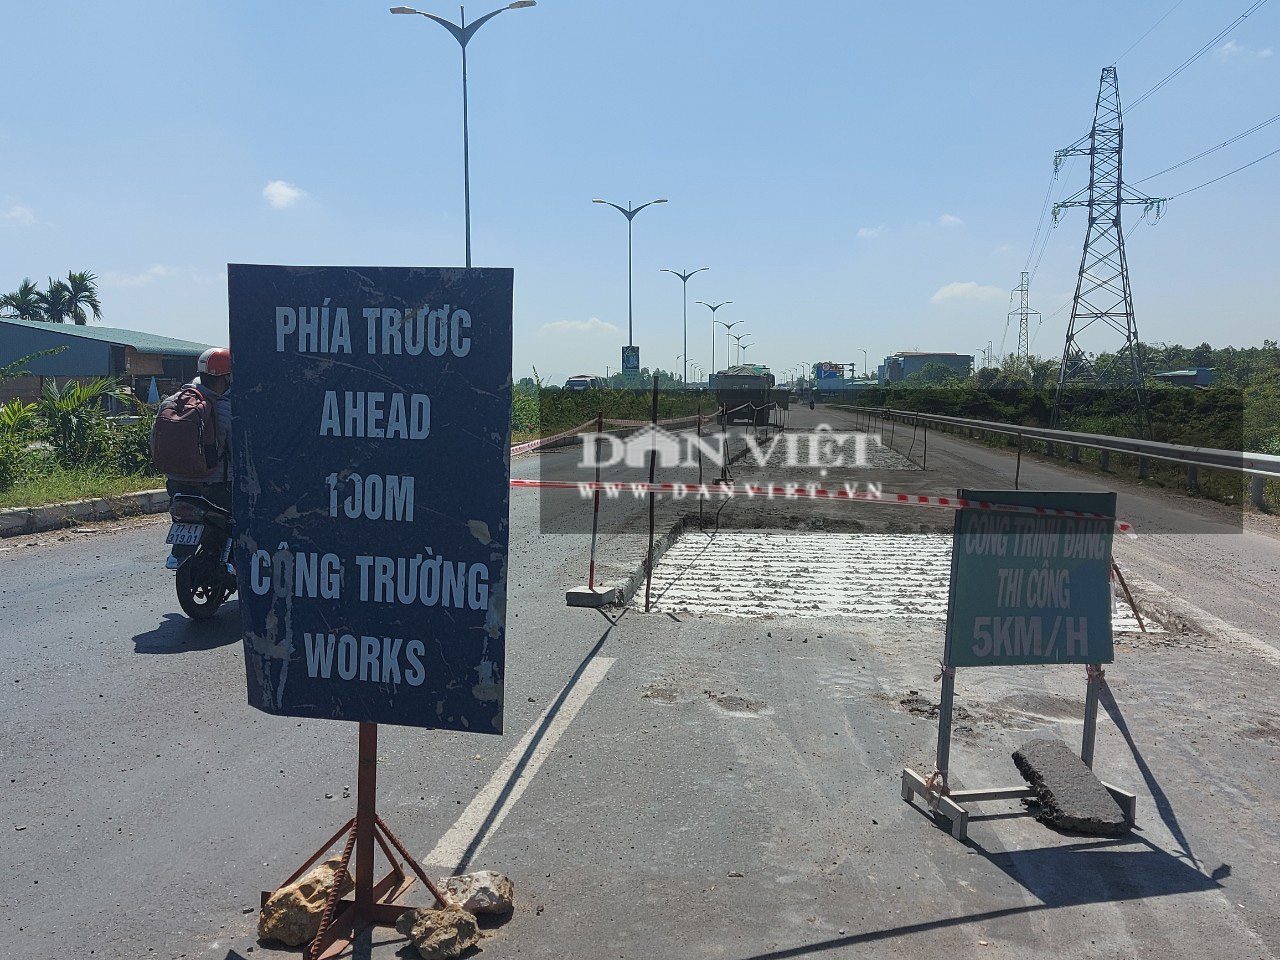 Xóa ổ gà xuất hiện trên quốc lộ nghìn tỷ đồng ở Bình Định - Ảnh 1.